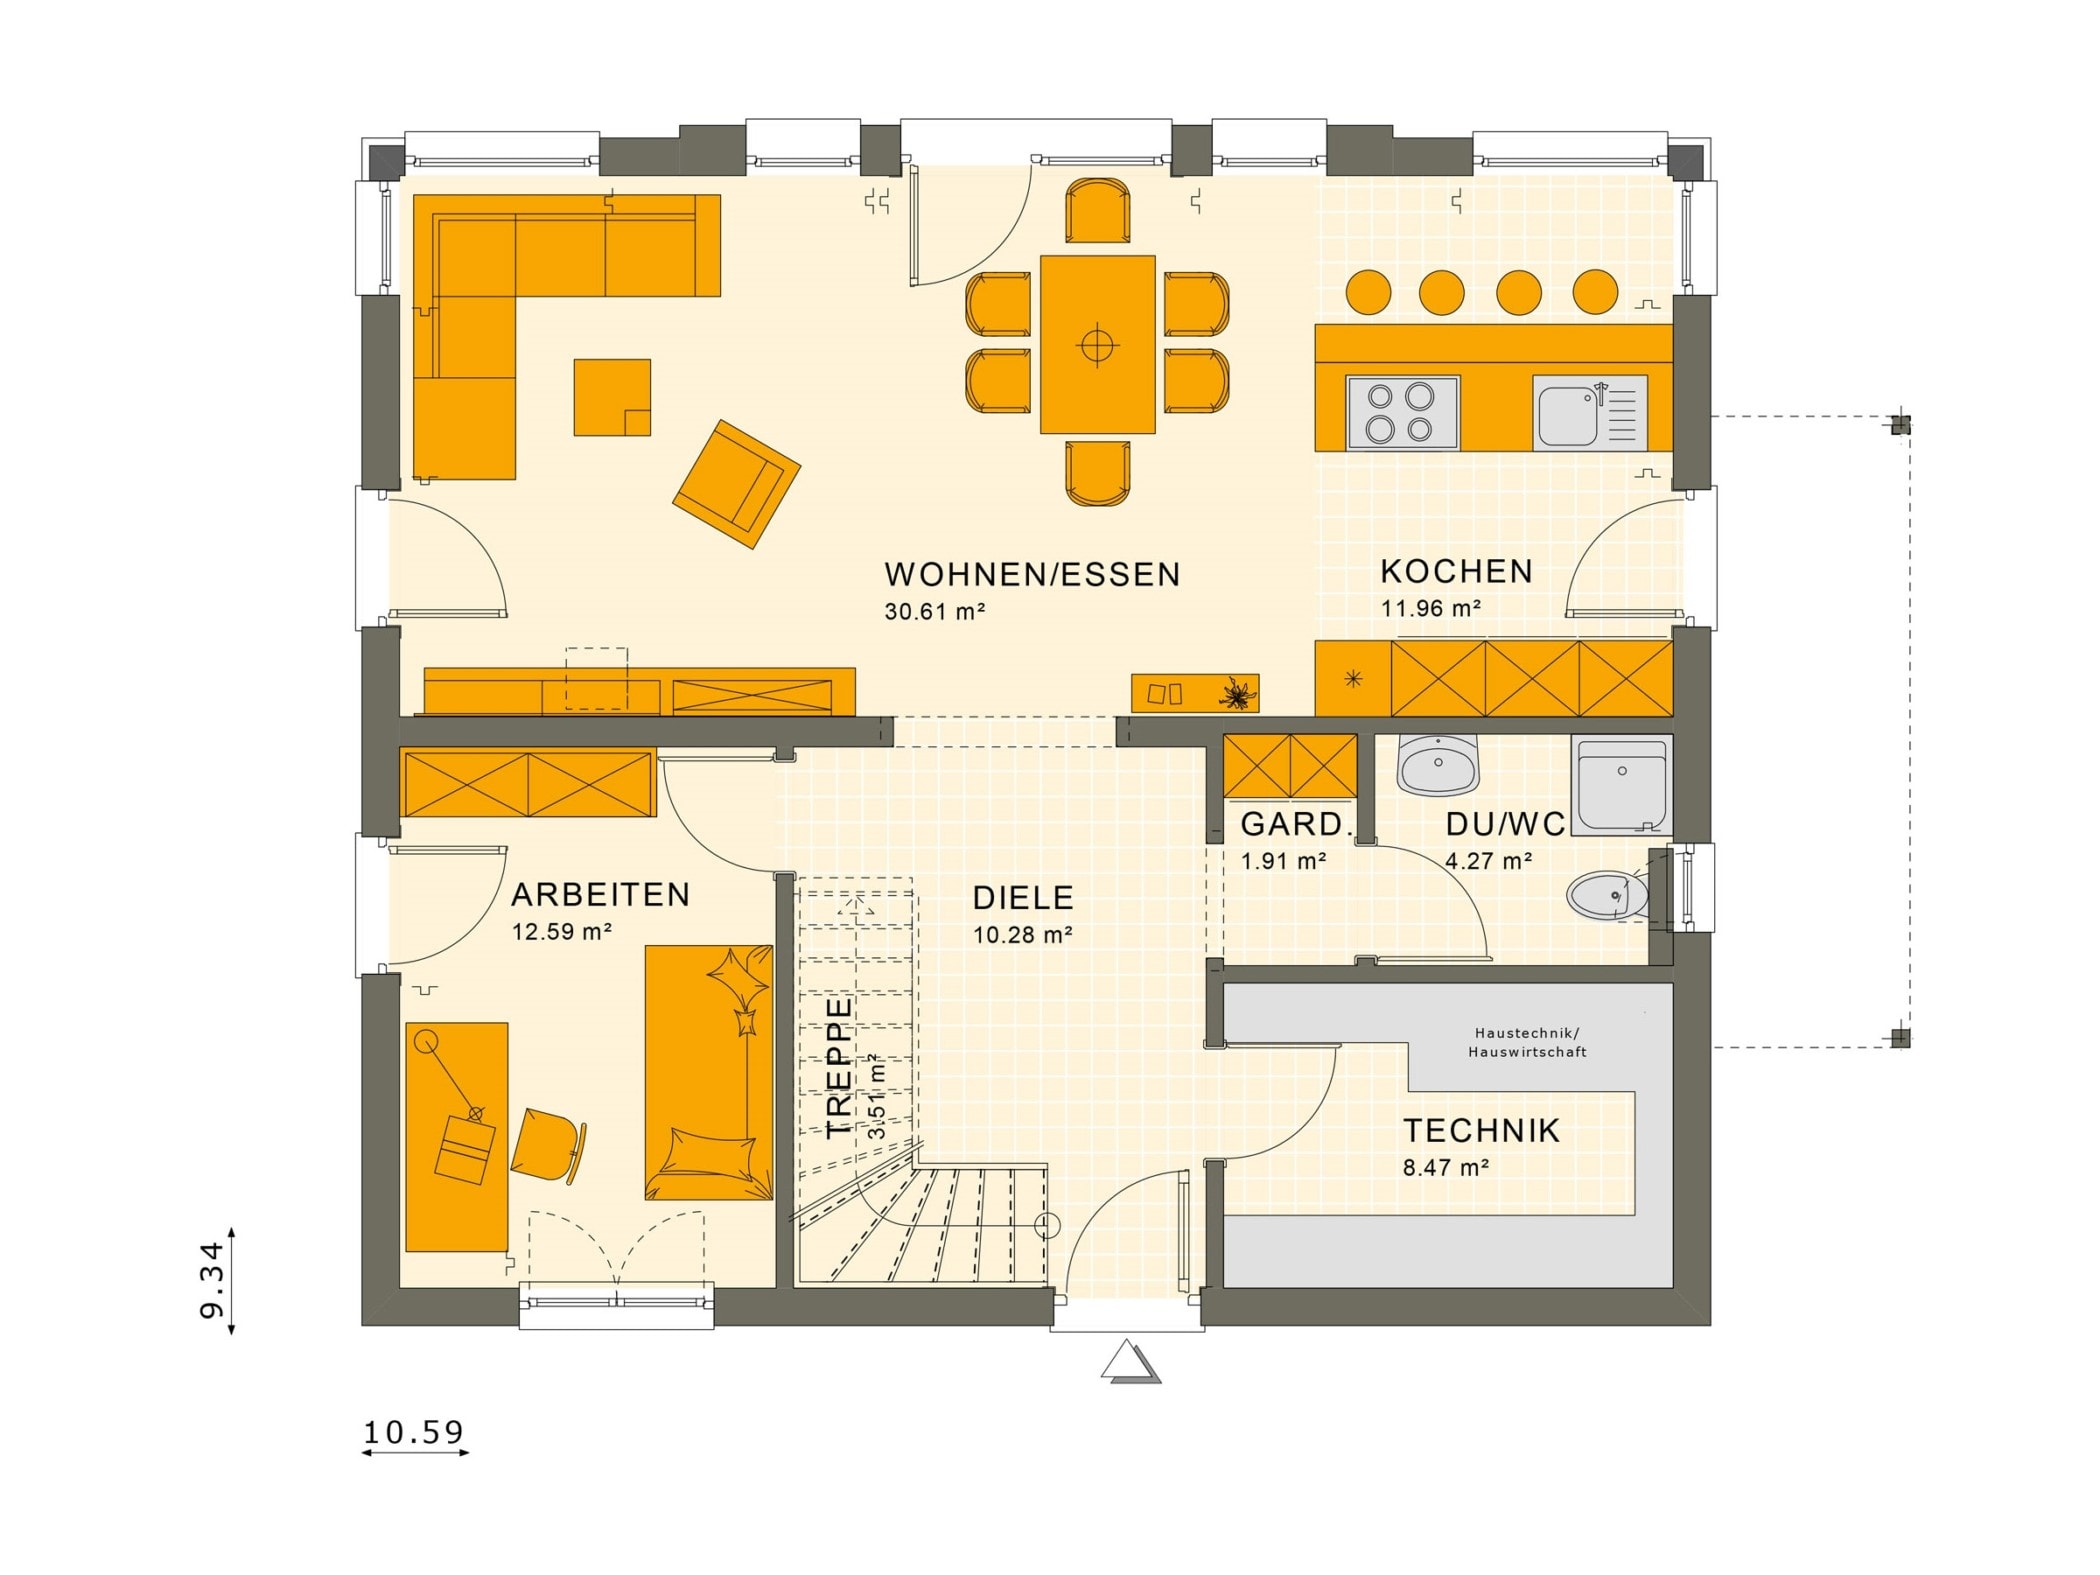 Einfamilienhaus Grundriss Erdgeschoss offen, 5 Zimmer, 165 qm - Fertighaus SUNSHINE 165 V3 von Living Haus - HausbauDirekt.de